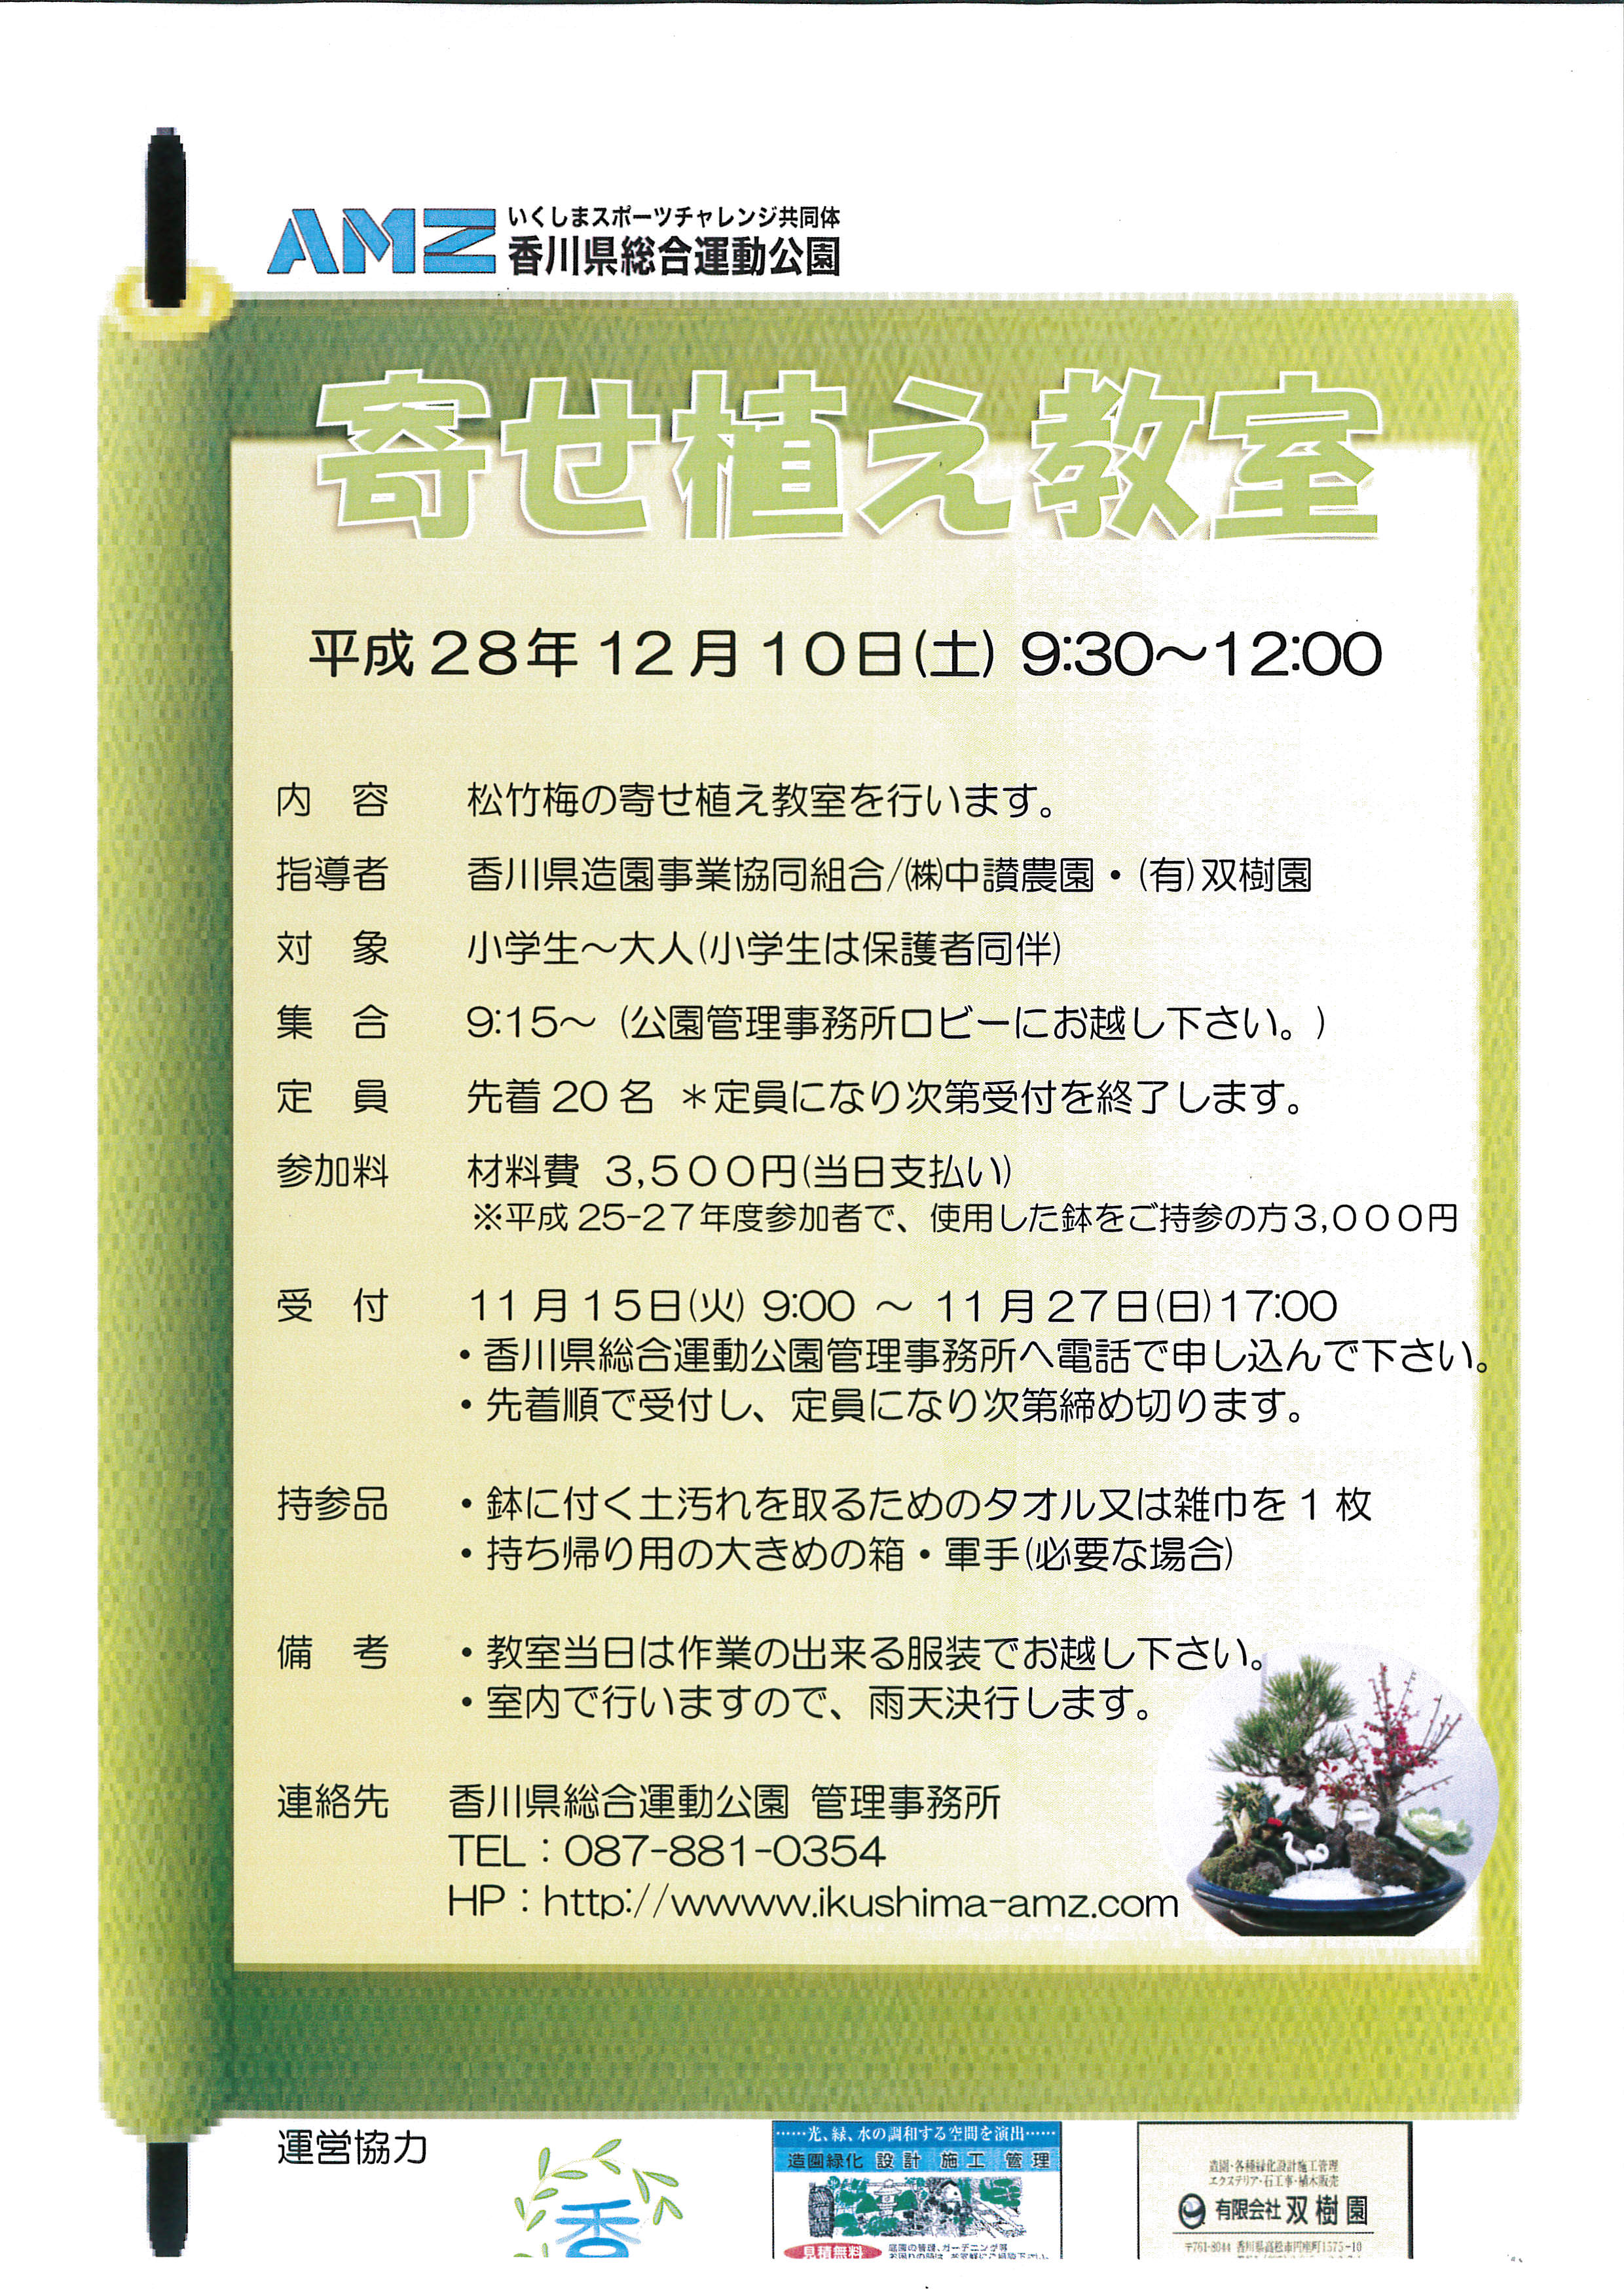 11月 16 香川県総合運動公園 いくしまスポーツチャレンジ共同体